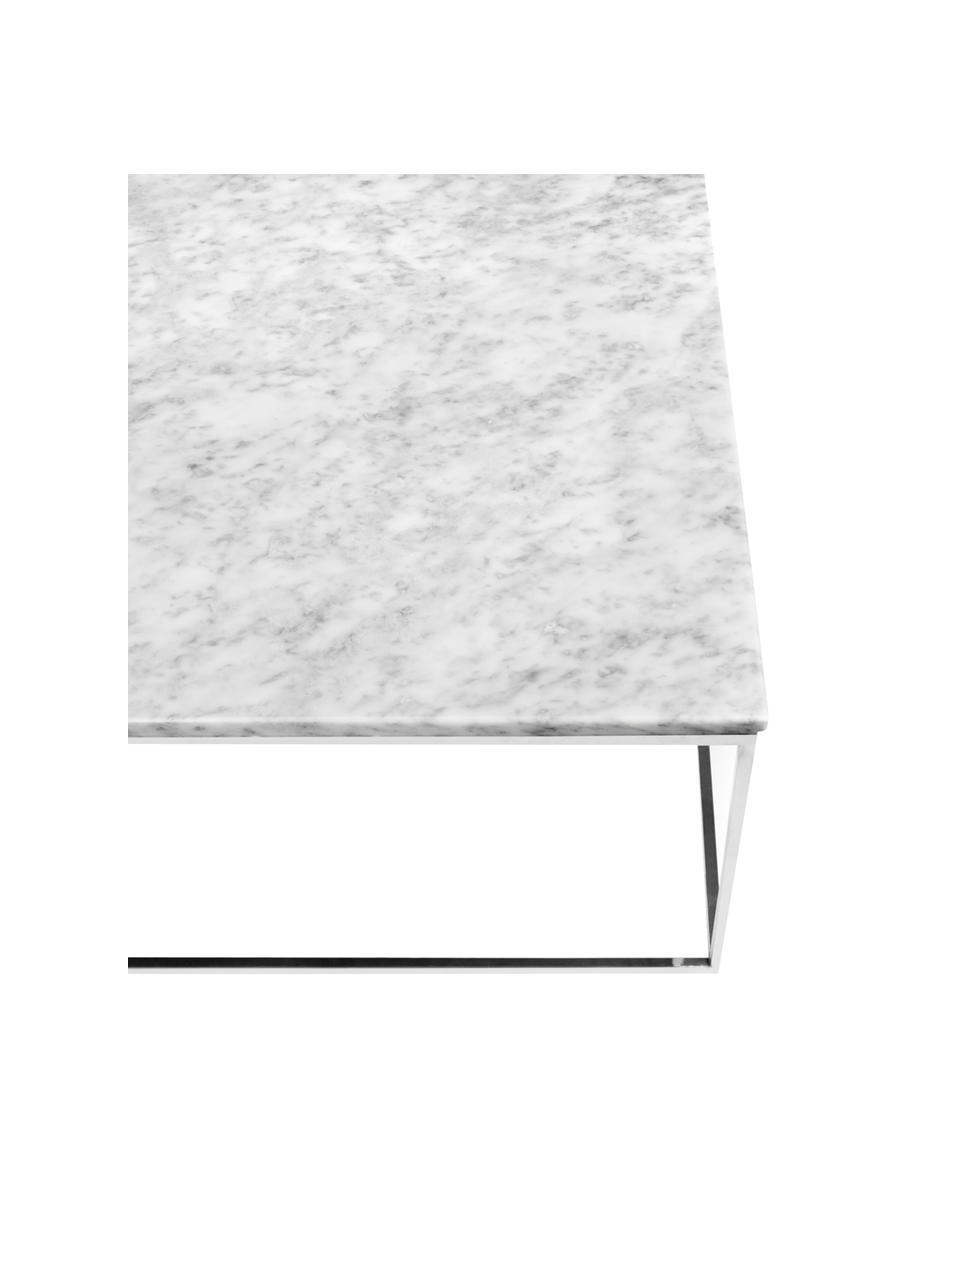 Marmor-Couchtisch Gleam, Tischplatte: Marmor, Gestell: Stahl, verchromt, Tischplatte: Weiss, marmoriert<br>Gestell: Chrom, 120 x 40 cm